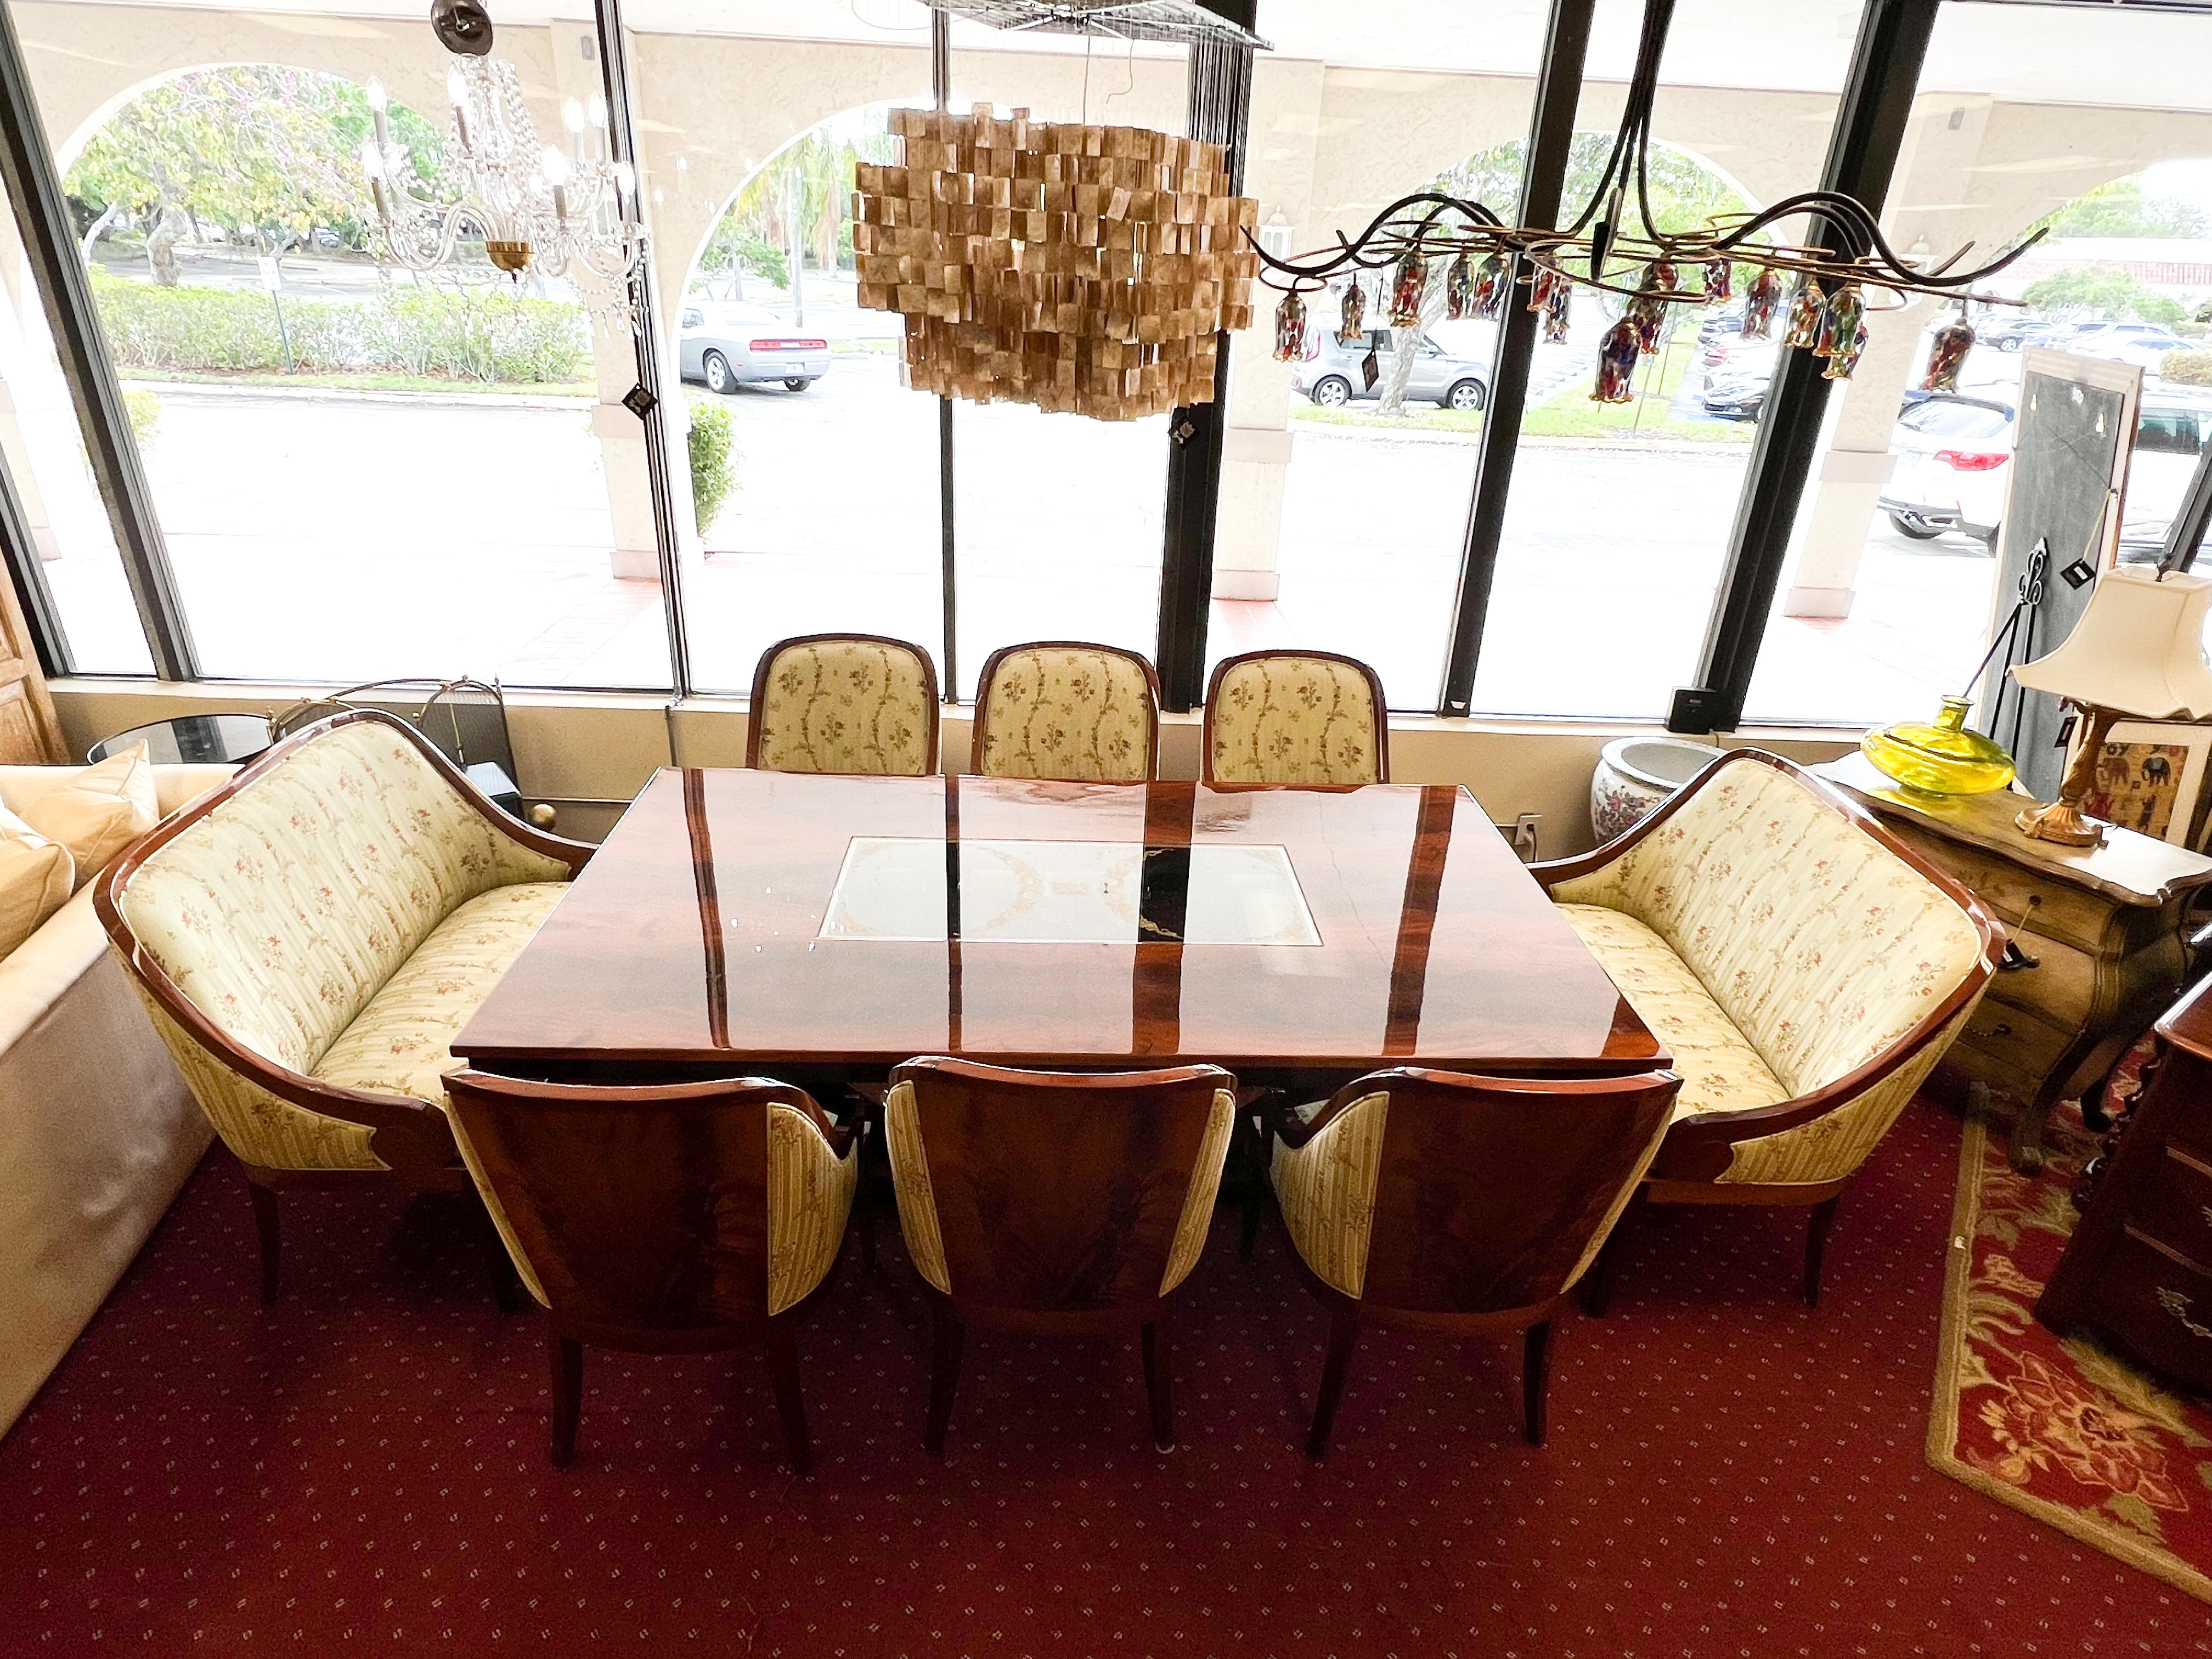 Unser 9-teiliges Esstischset aus geflammtem Mahagoni im englischen Art-Deco-Stil wird in Peru handgefertigt.
Dieser Esstisch ist aus Hartholz gefertigt und mit Flammenmahagoni-Furnier, auch bekannt als Crotch-Mahagoni, veredelt. Er besticht durch